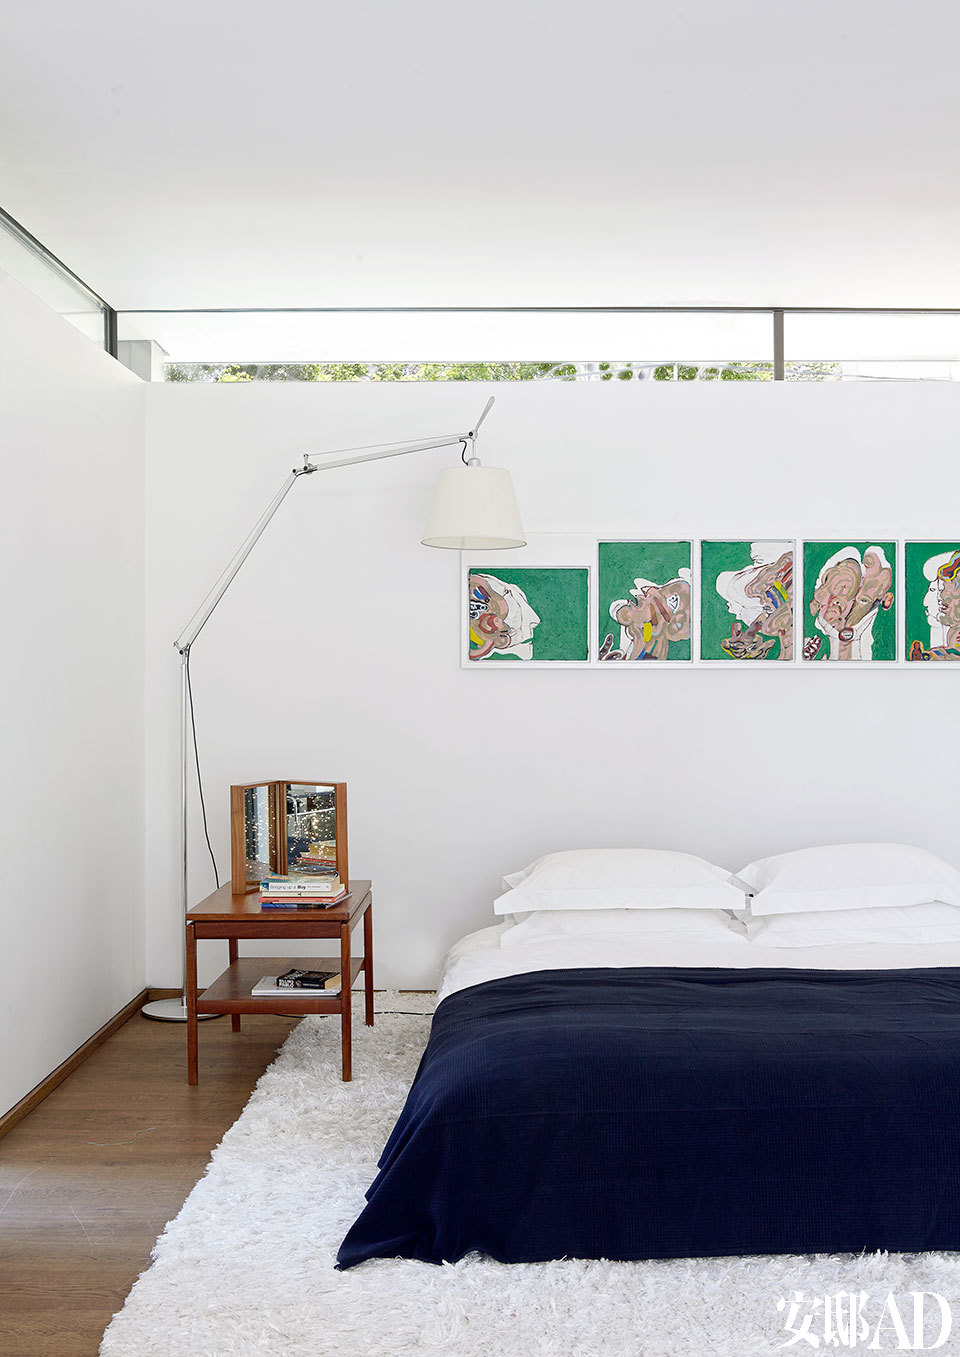 墙壁与天花之间留出的一小条玻璃面，不仅纳入美丽的自然光，让绿意也渗透进来。主卧室里的床来自B&B Italia，落地灯是Tolomeo Mega Terra来自Artemide，椅子则是复古的丹麦设计。